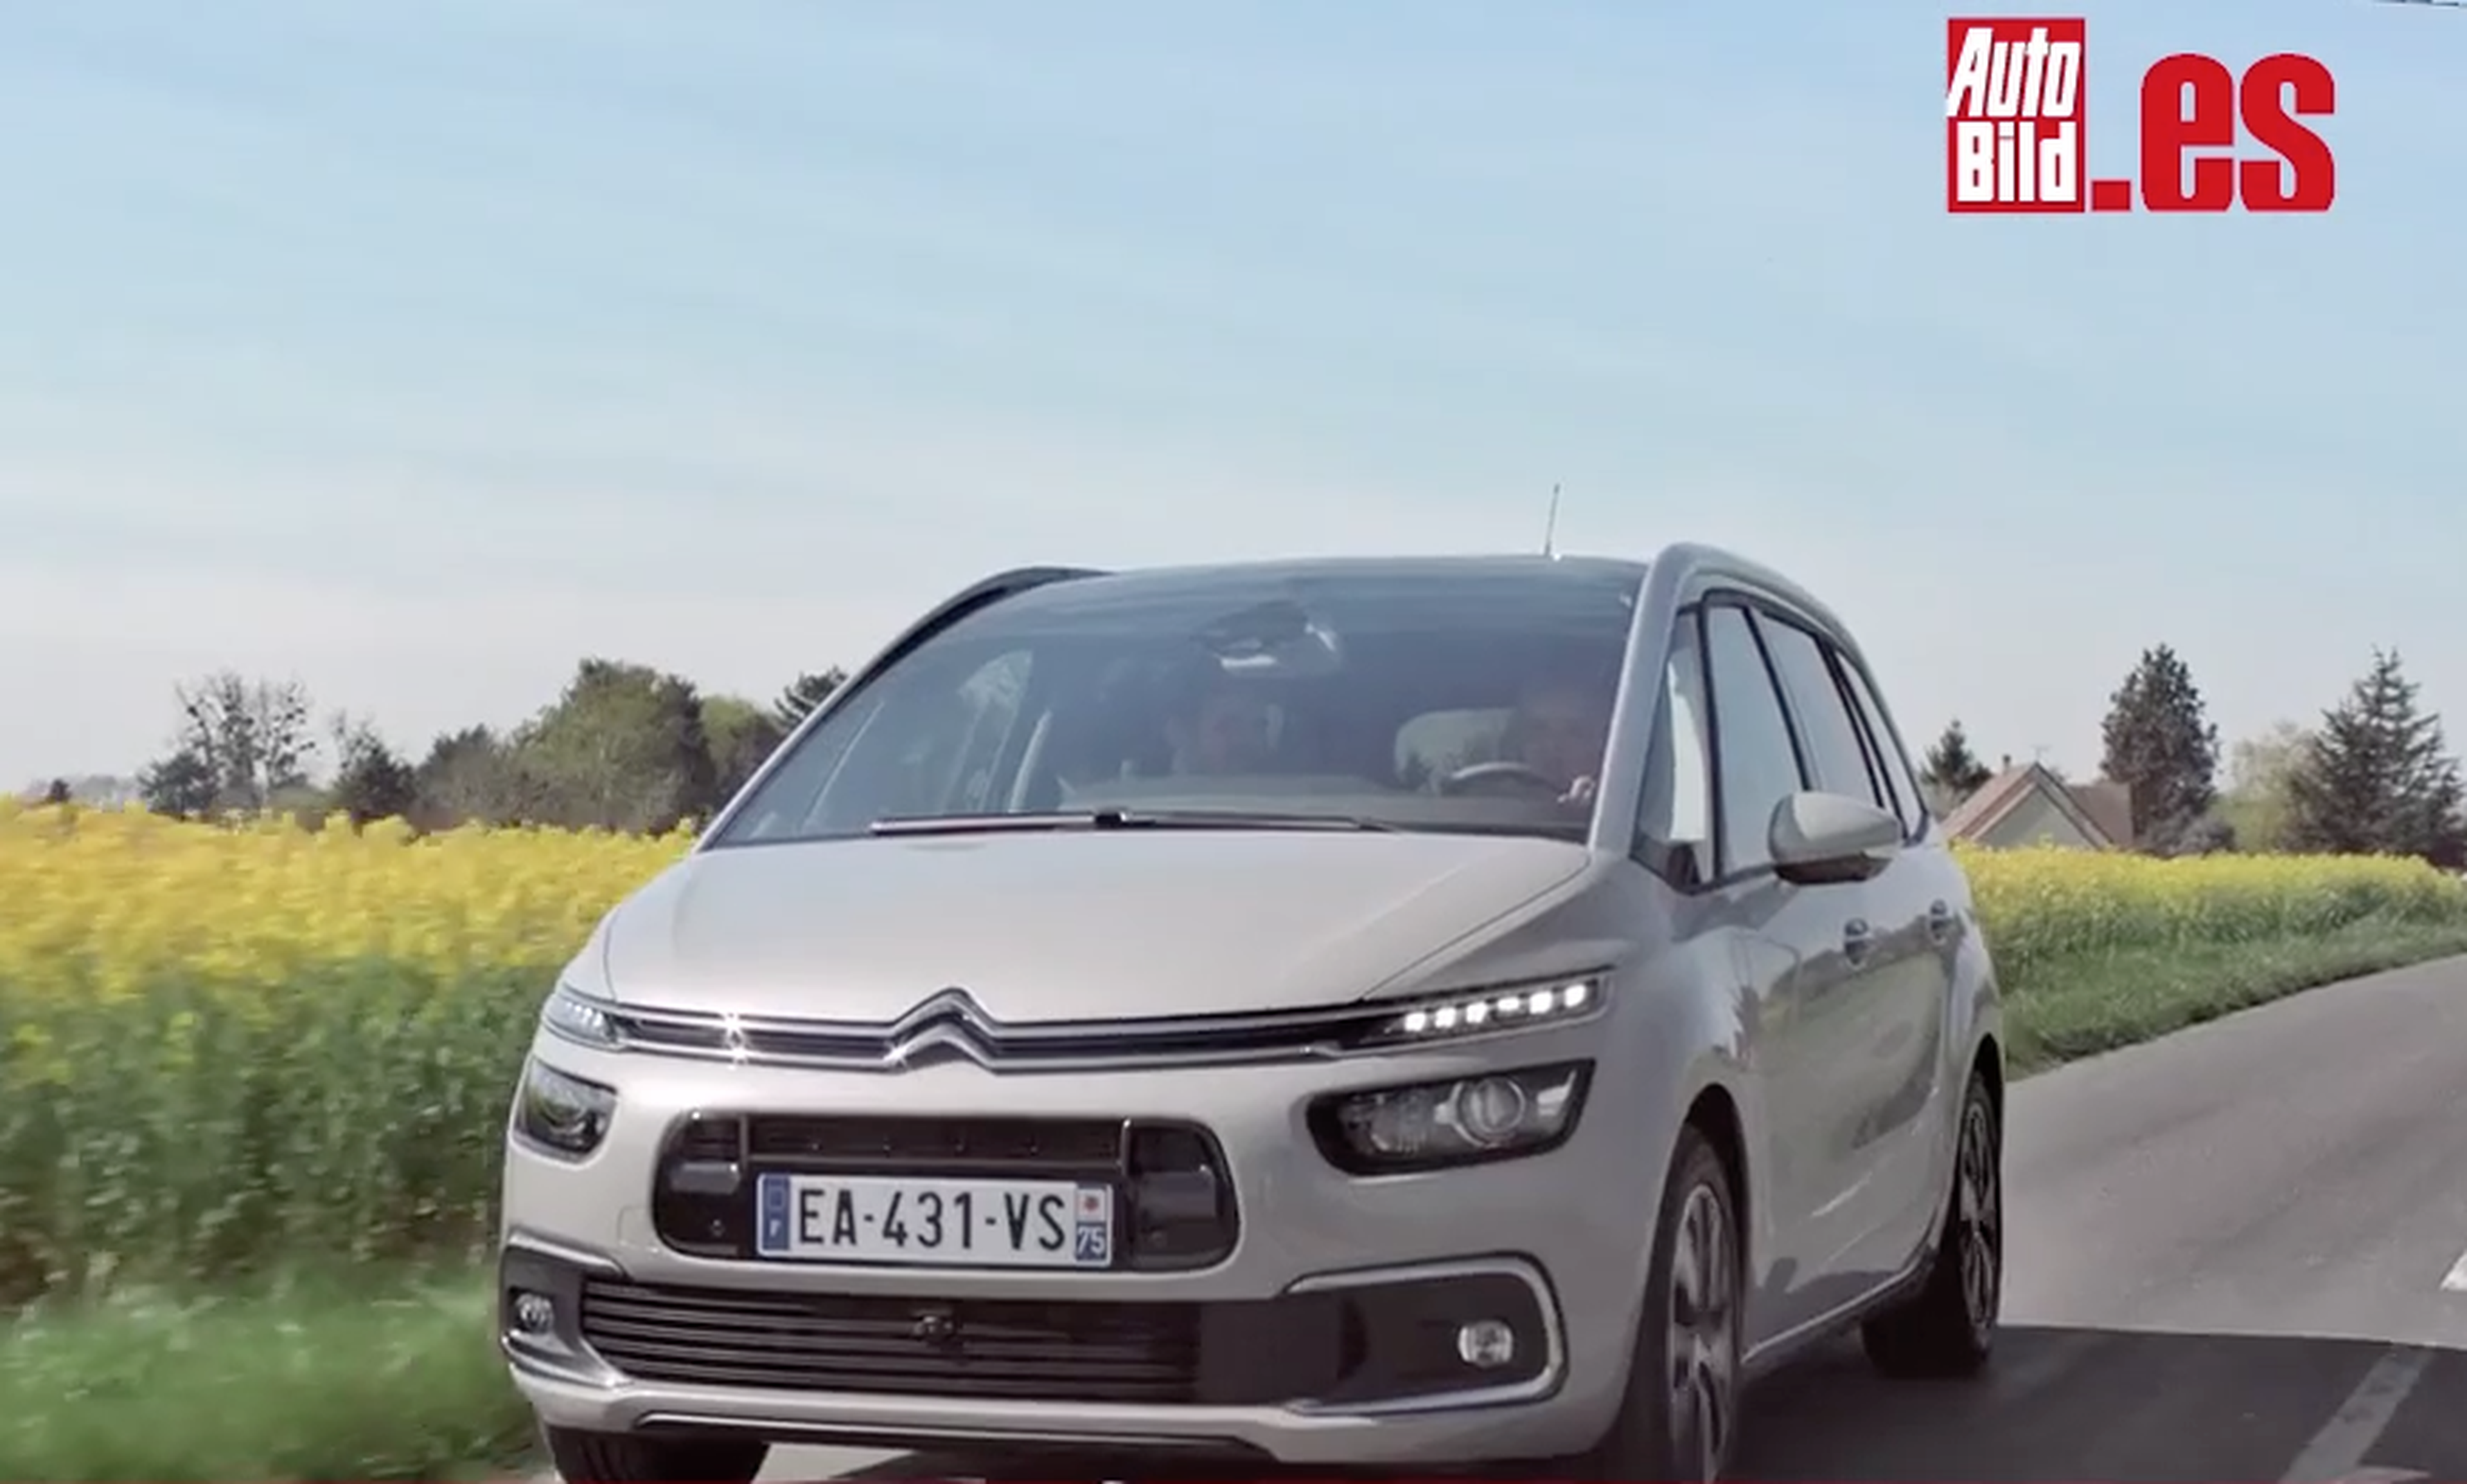 Citroën C4 Picasso 2016: aquí puedes ver sus novedades